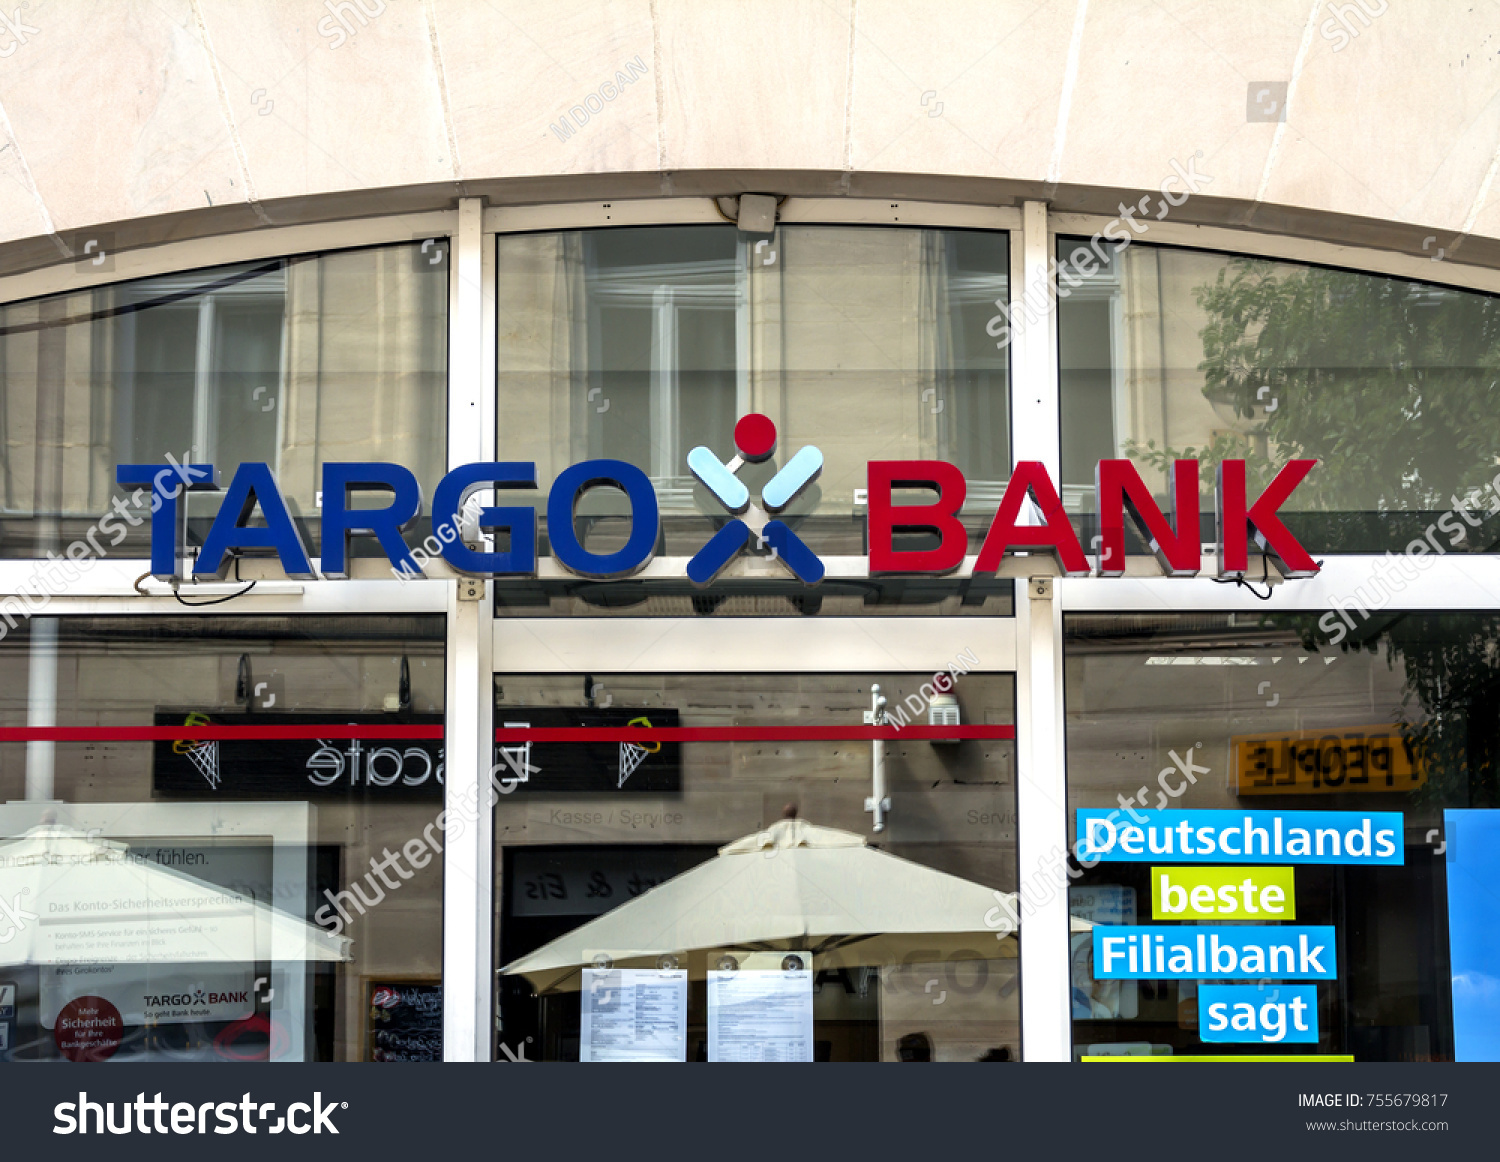 Personal Loan Targobank